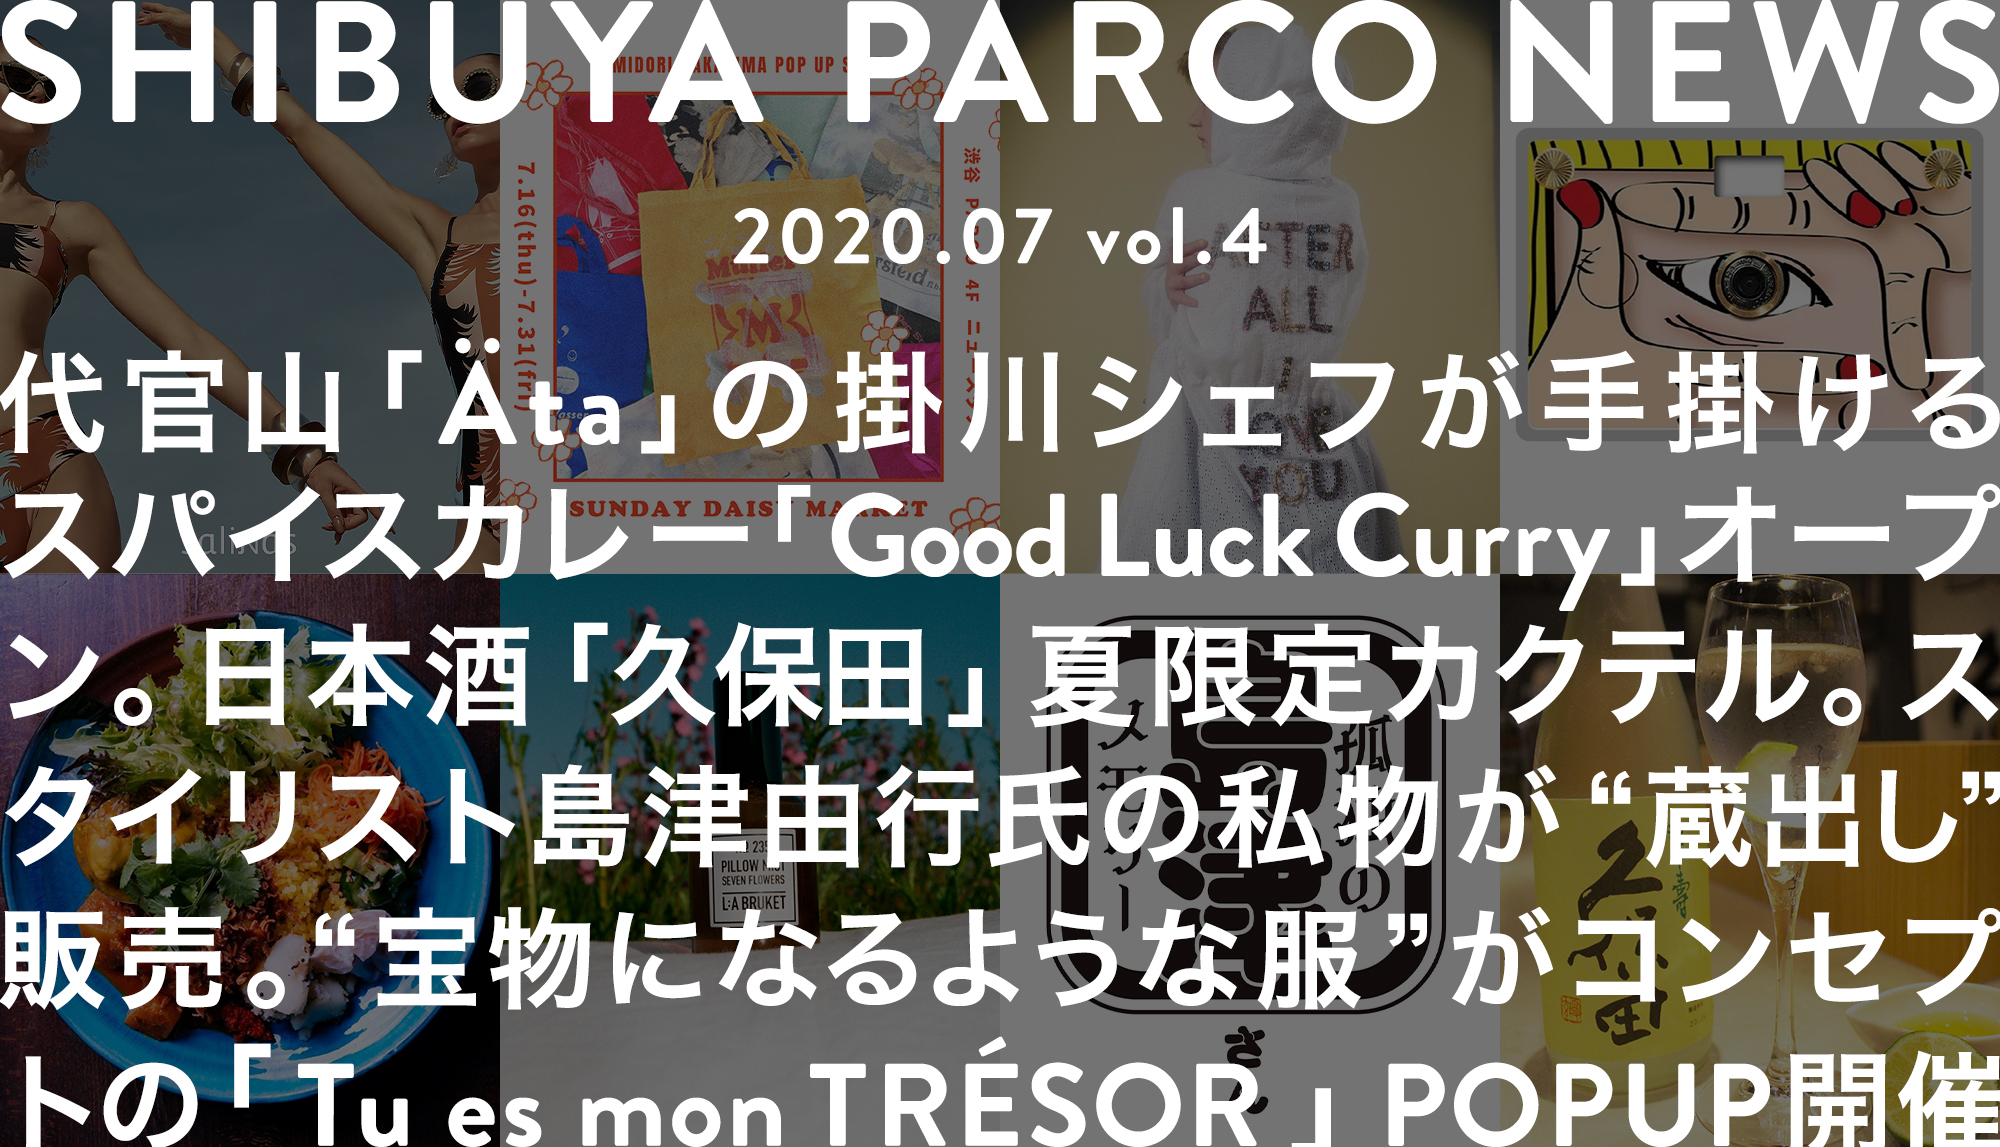 SHIBUYA PARCO NEWS-2020.7-vol.4